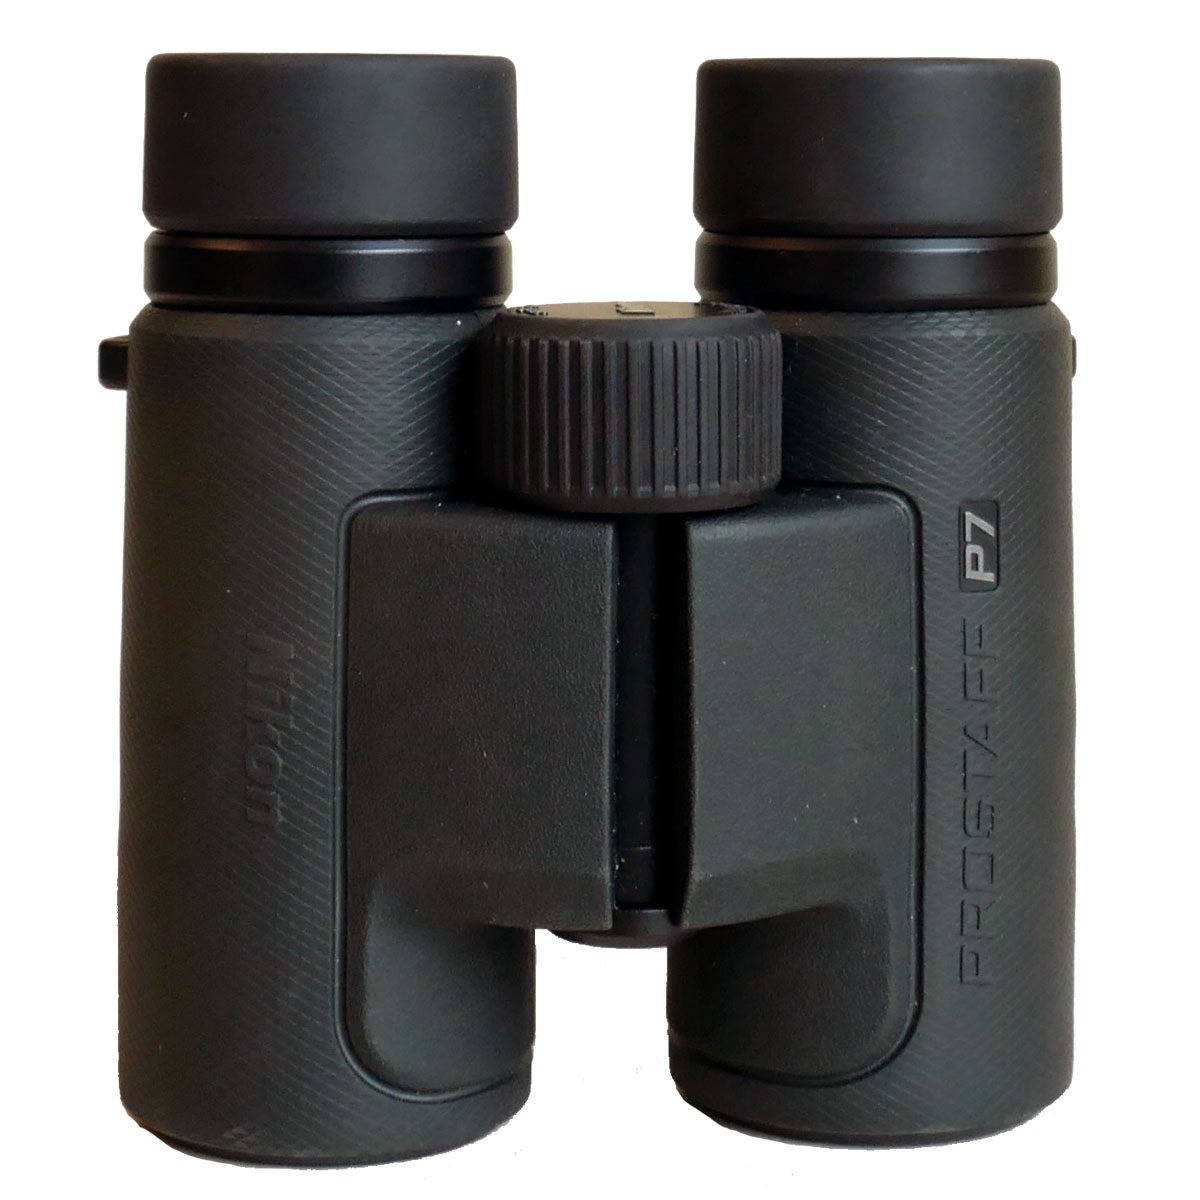 Black-green binoculars